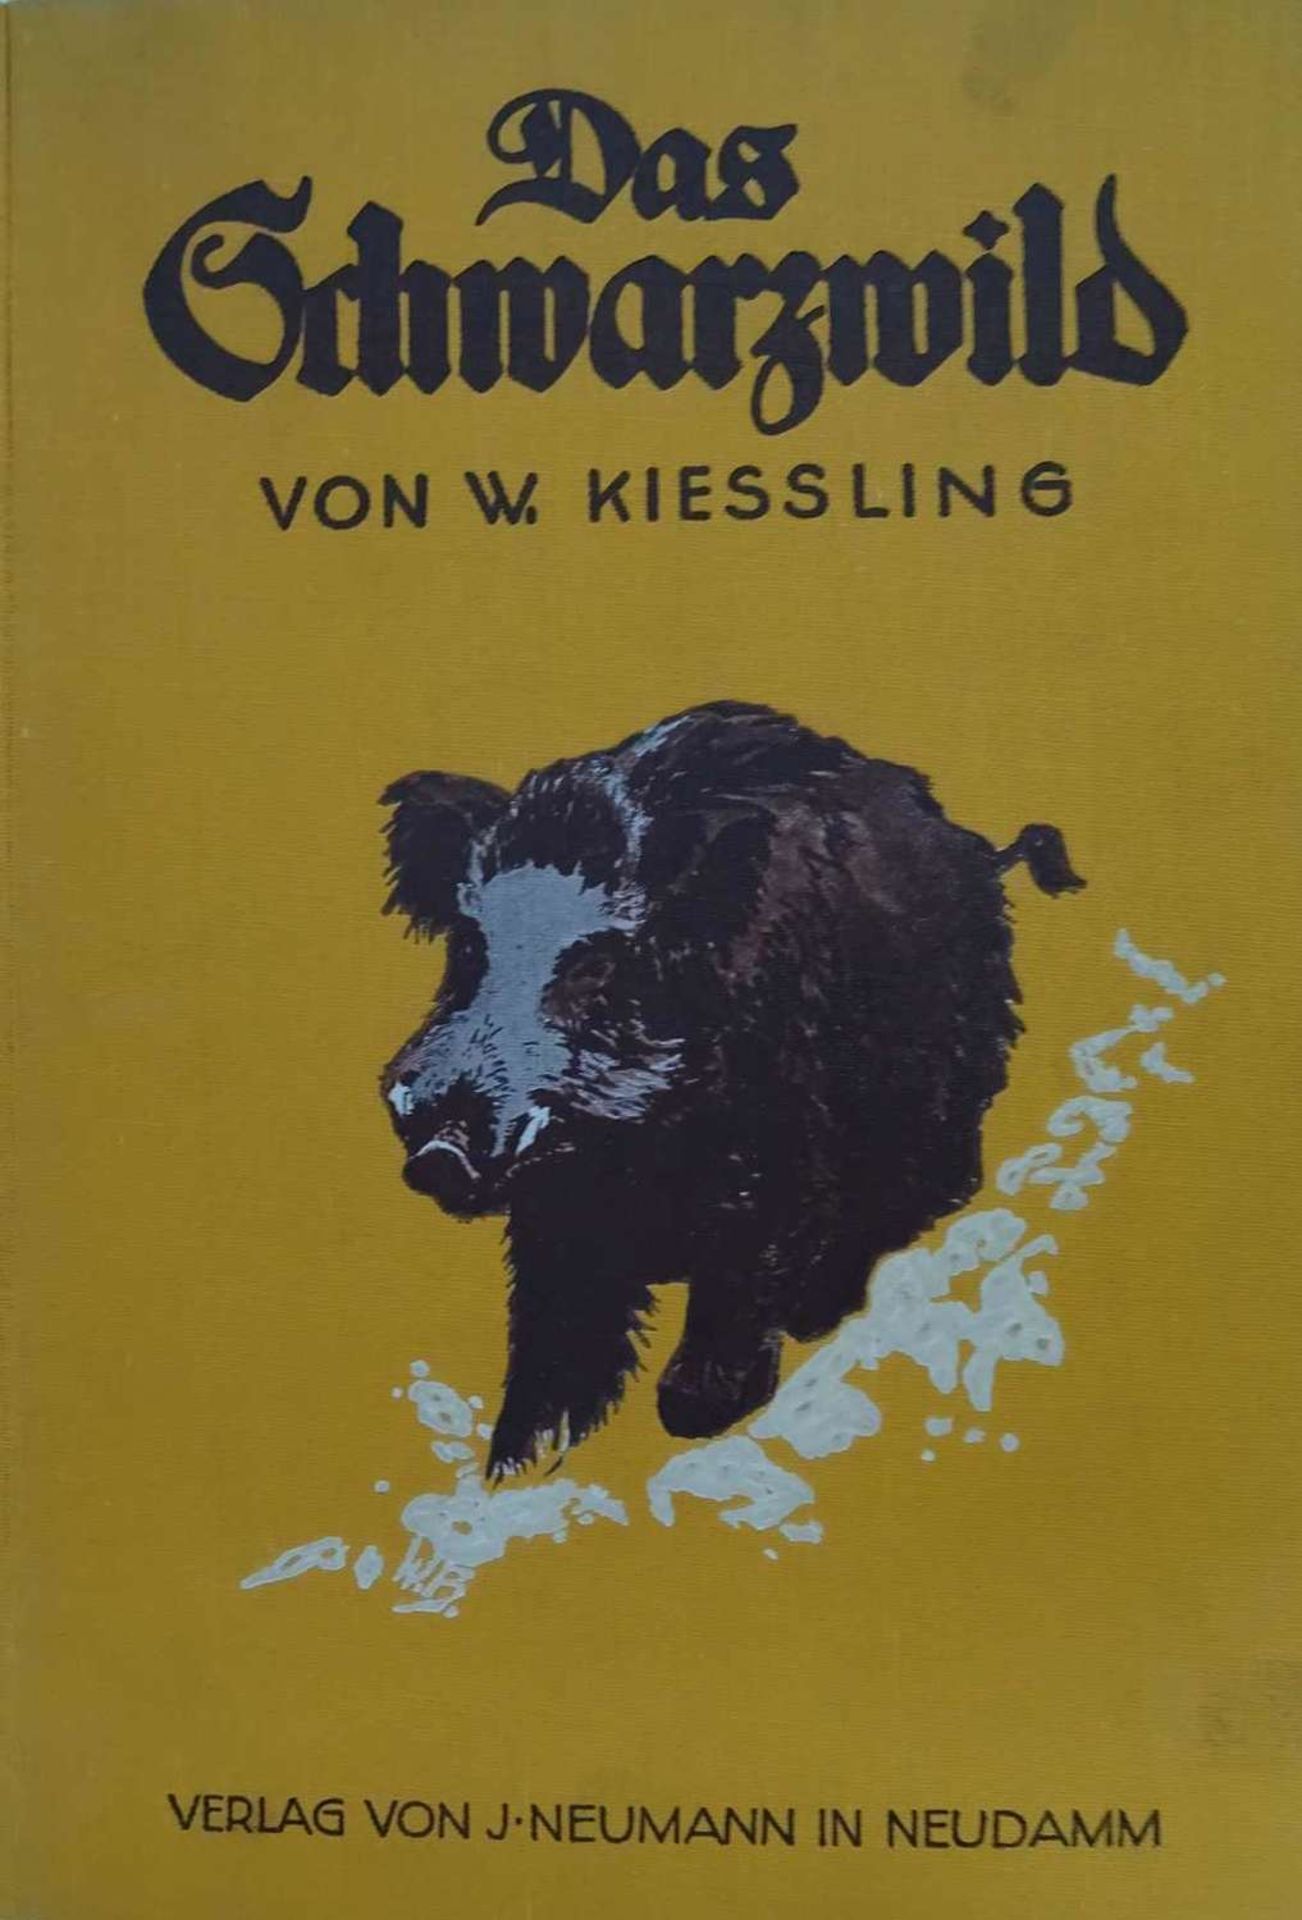 W. von Kiessling, Das Schwarzwild. Mit 110 Textabb. Und 14 zum Teil farbigen Kunstdrucktafeln.